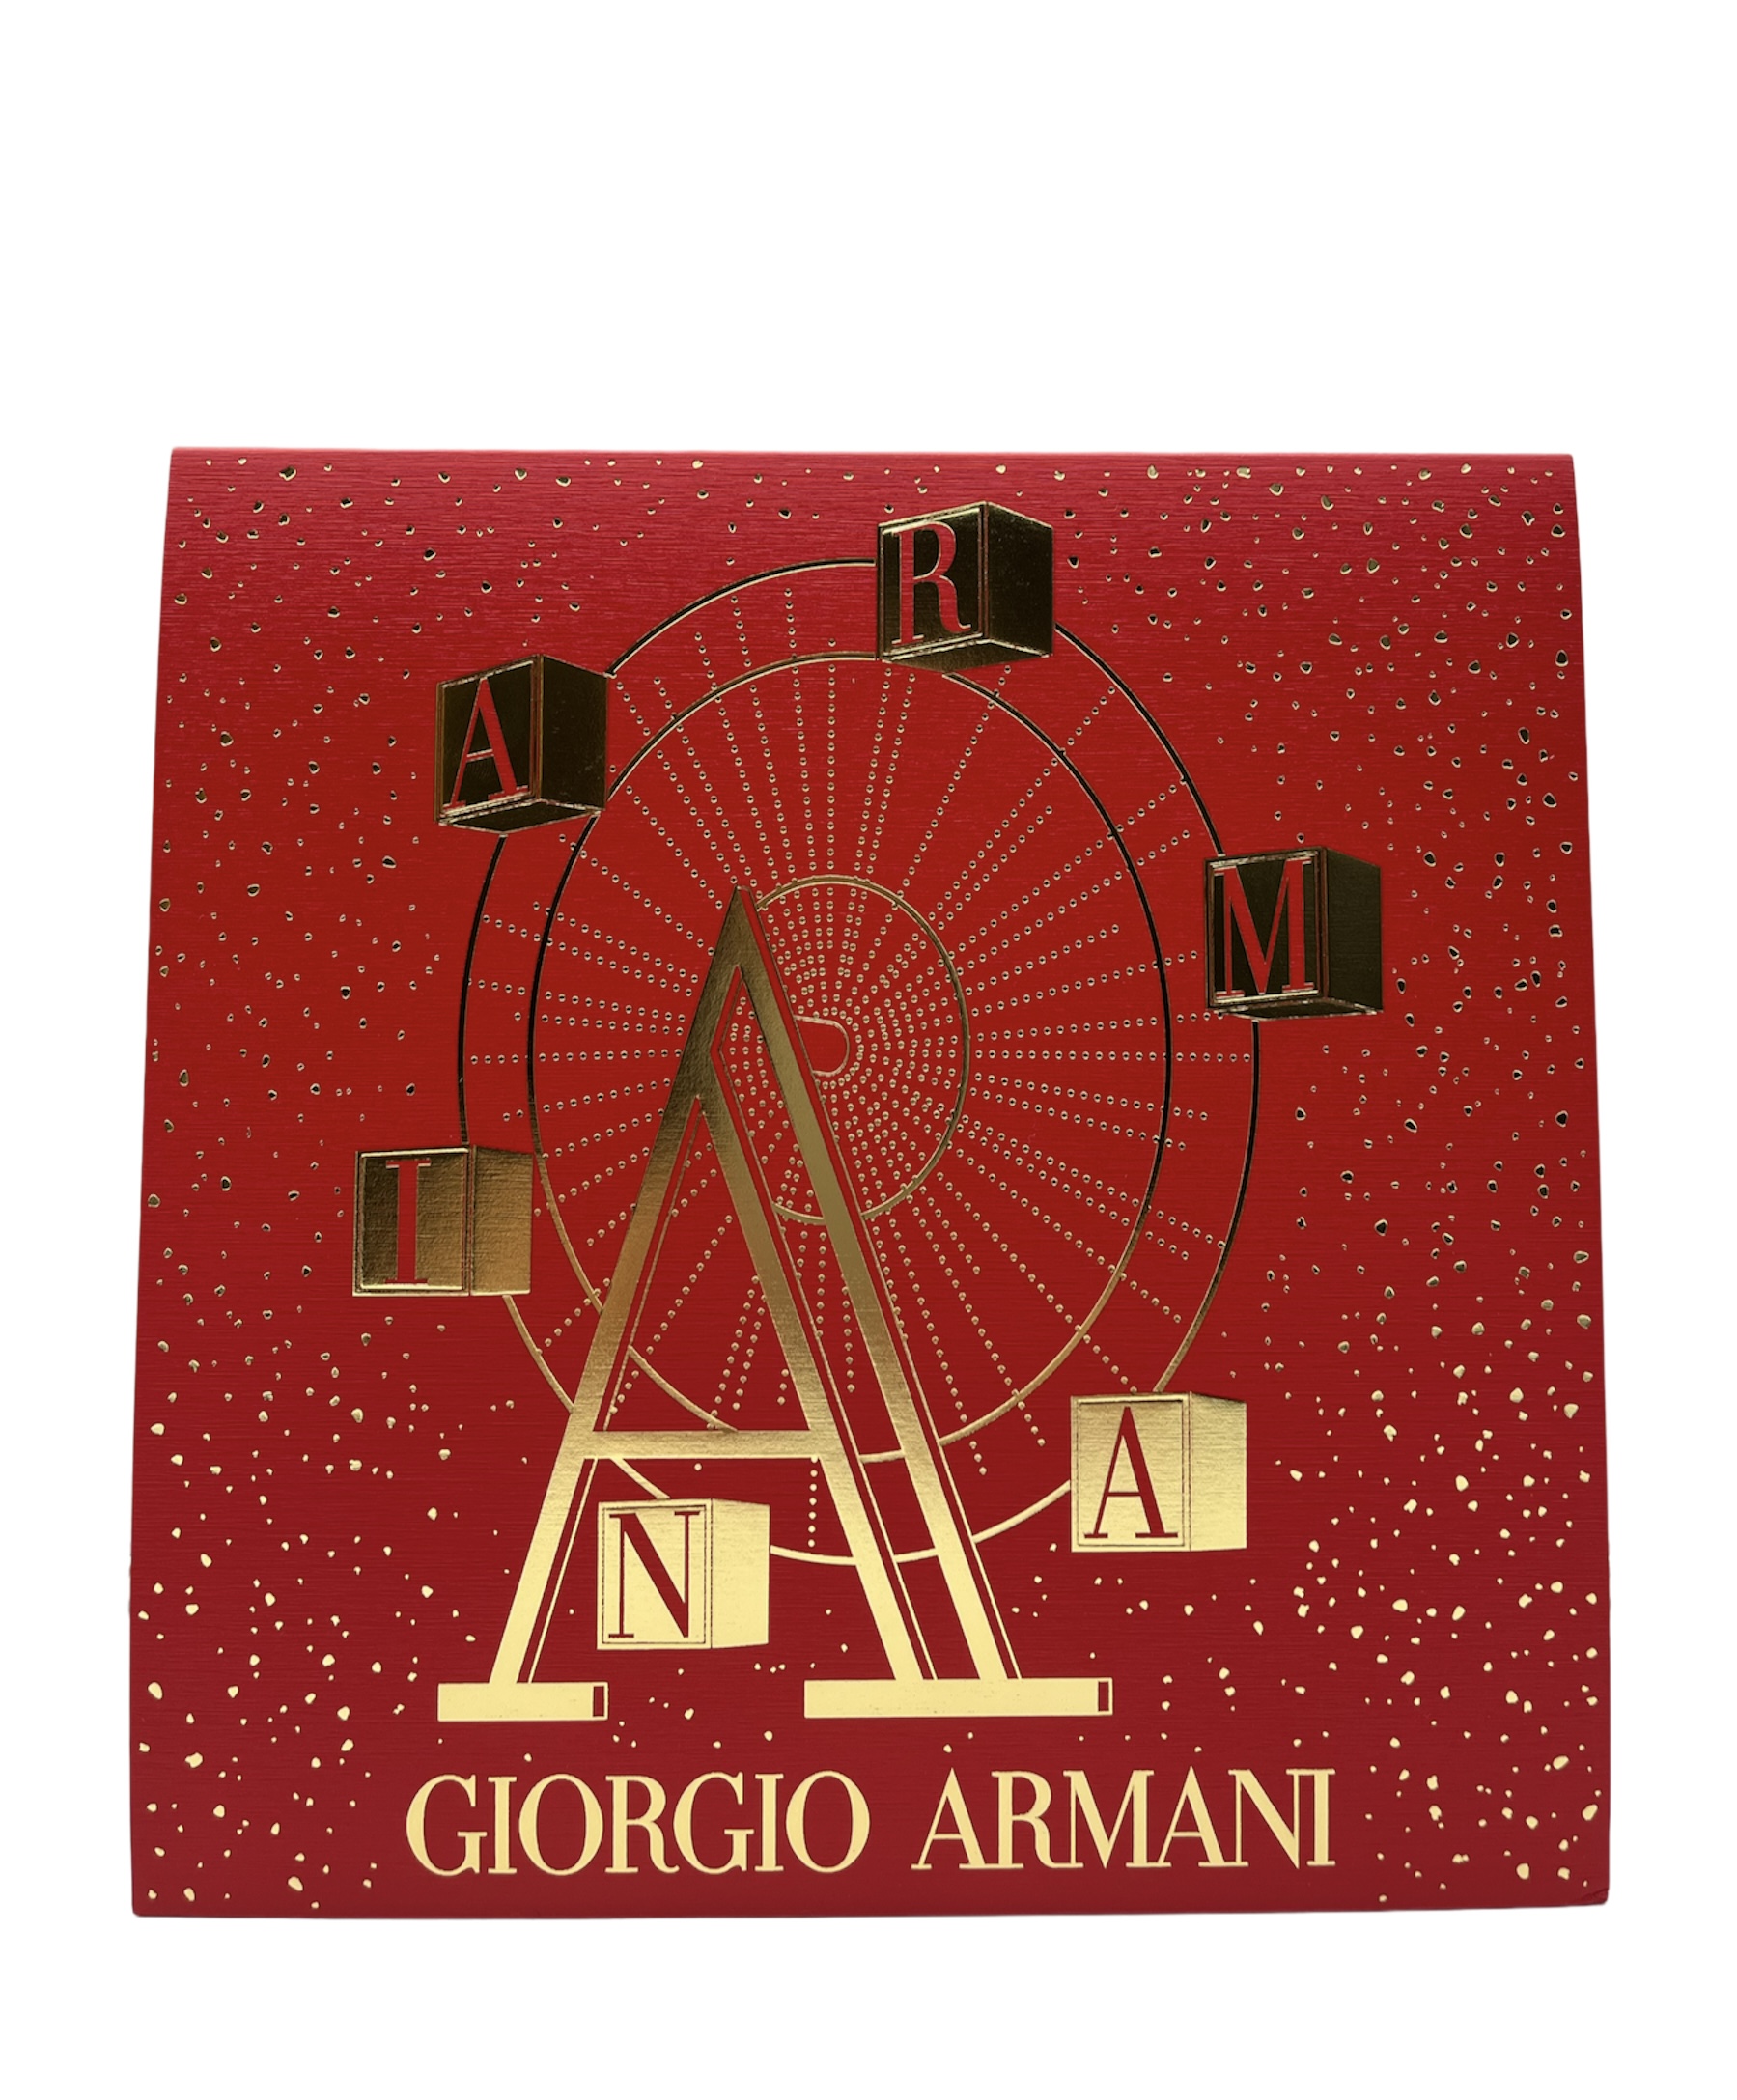 Georgio Armani My Way Duftset Eau de Parfum 50ml + Bodylotion 75ml + Showergel 75ml